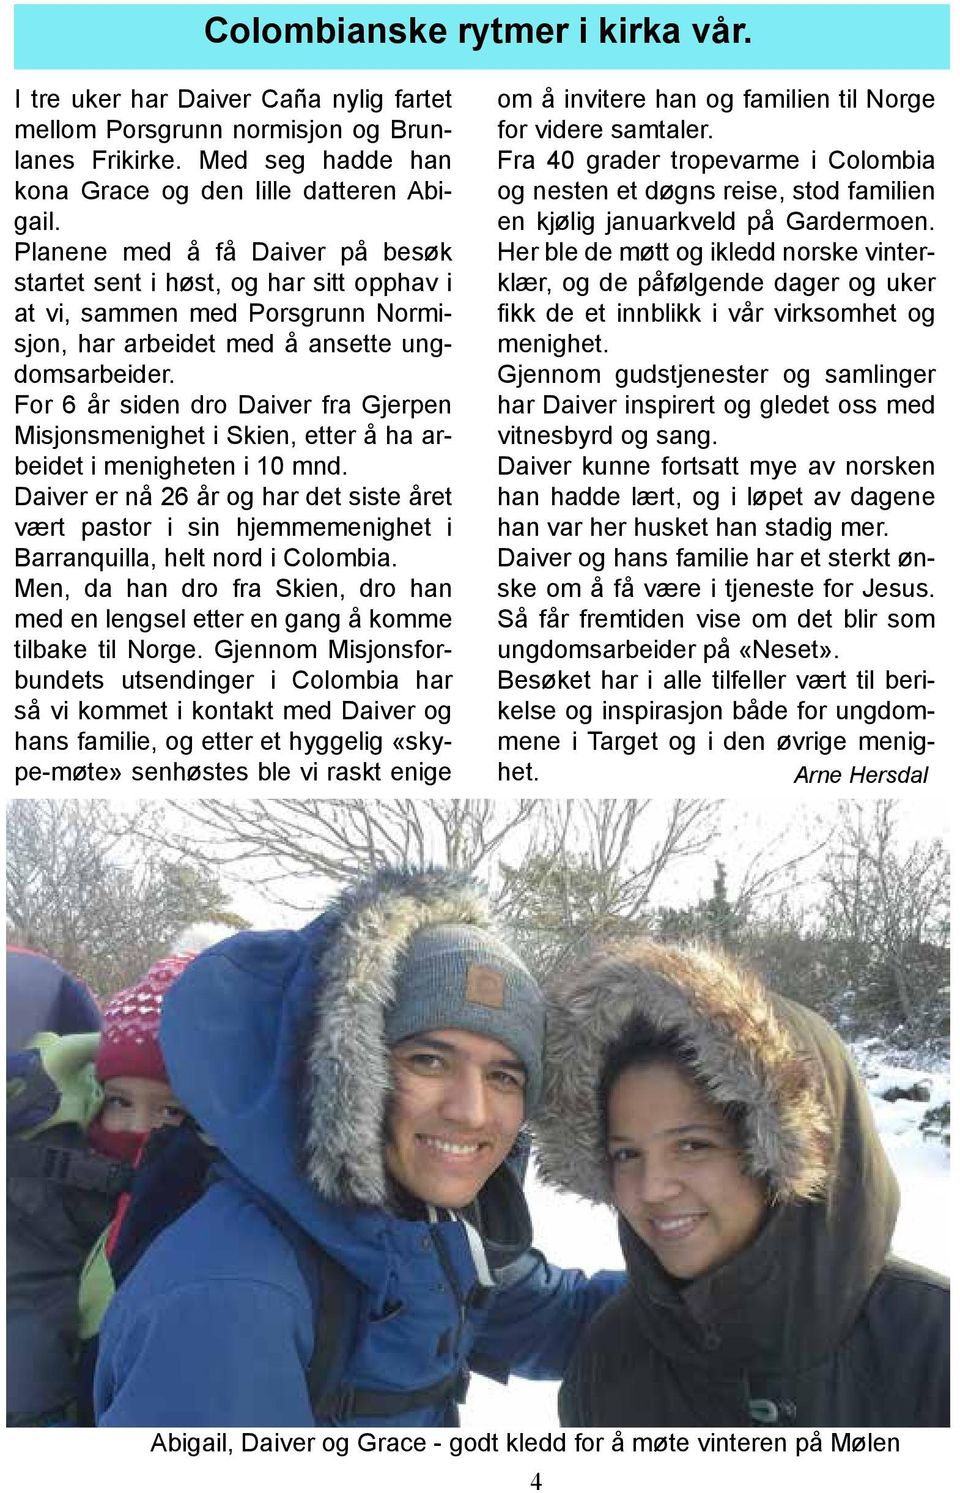 For 6 år siden dro Daiver fra Gjerpen Misjonsmenighet i Skien, etter å ha arbeidet i menigheten i 10 mnd.